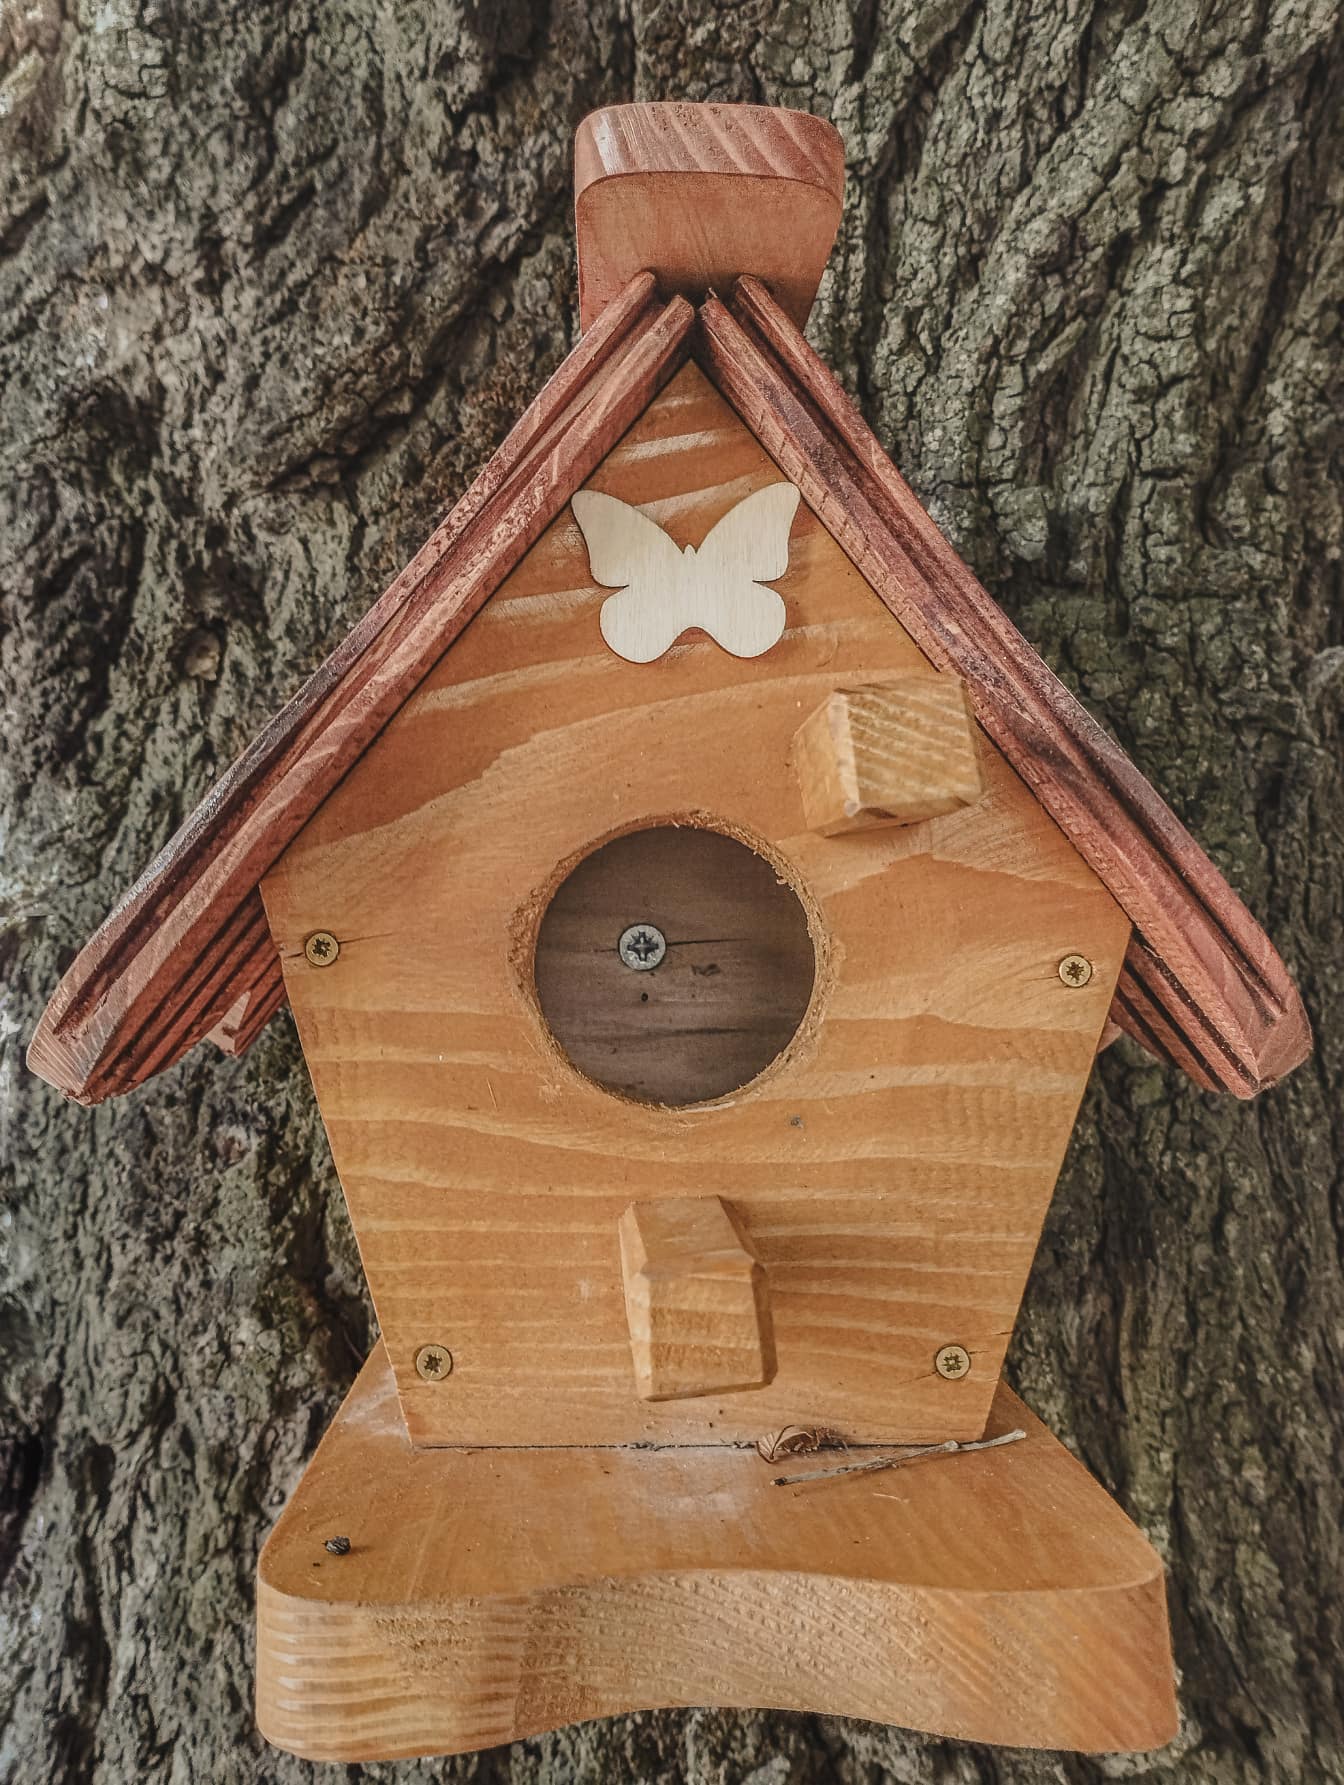 Altes Vintage-Vogelhaus aus Holz, das auf Baumstamm hängt, Nahaufnahme